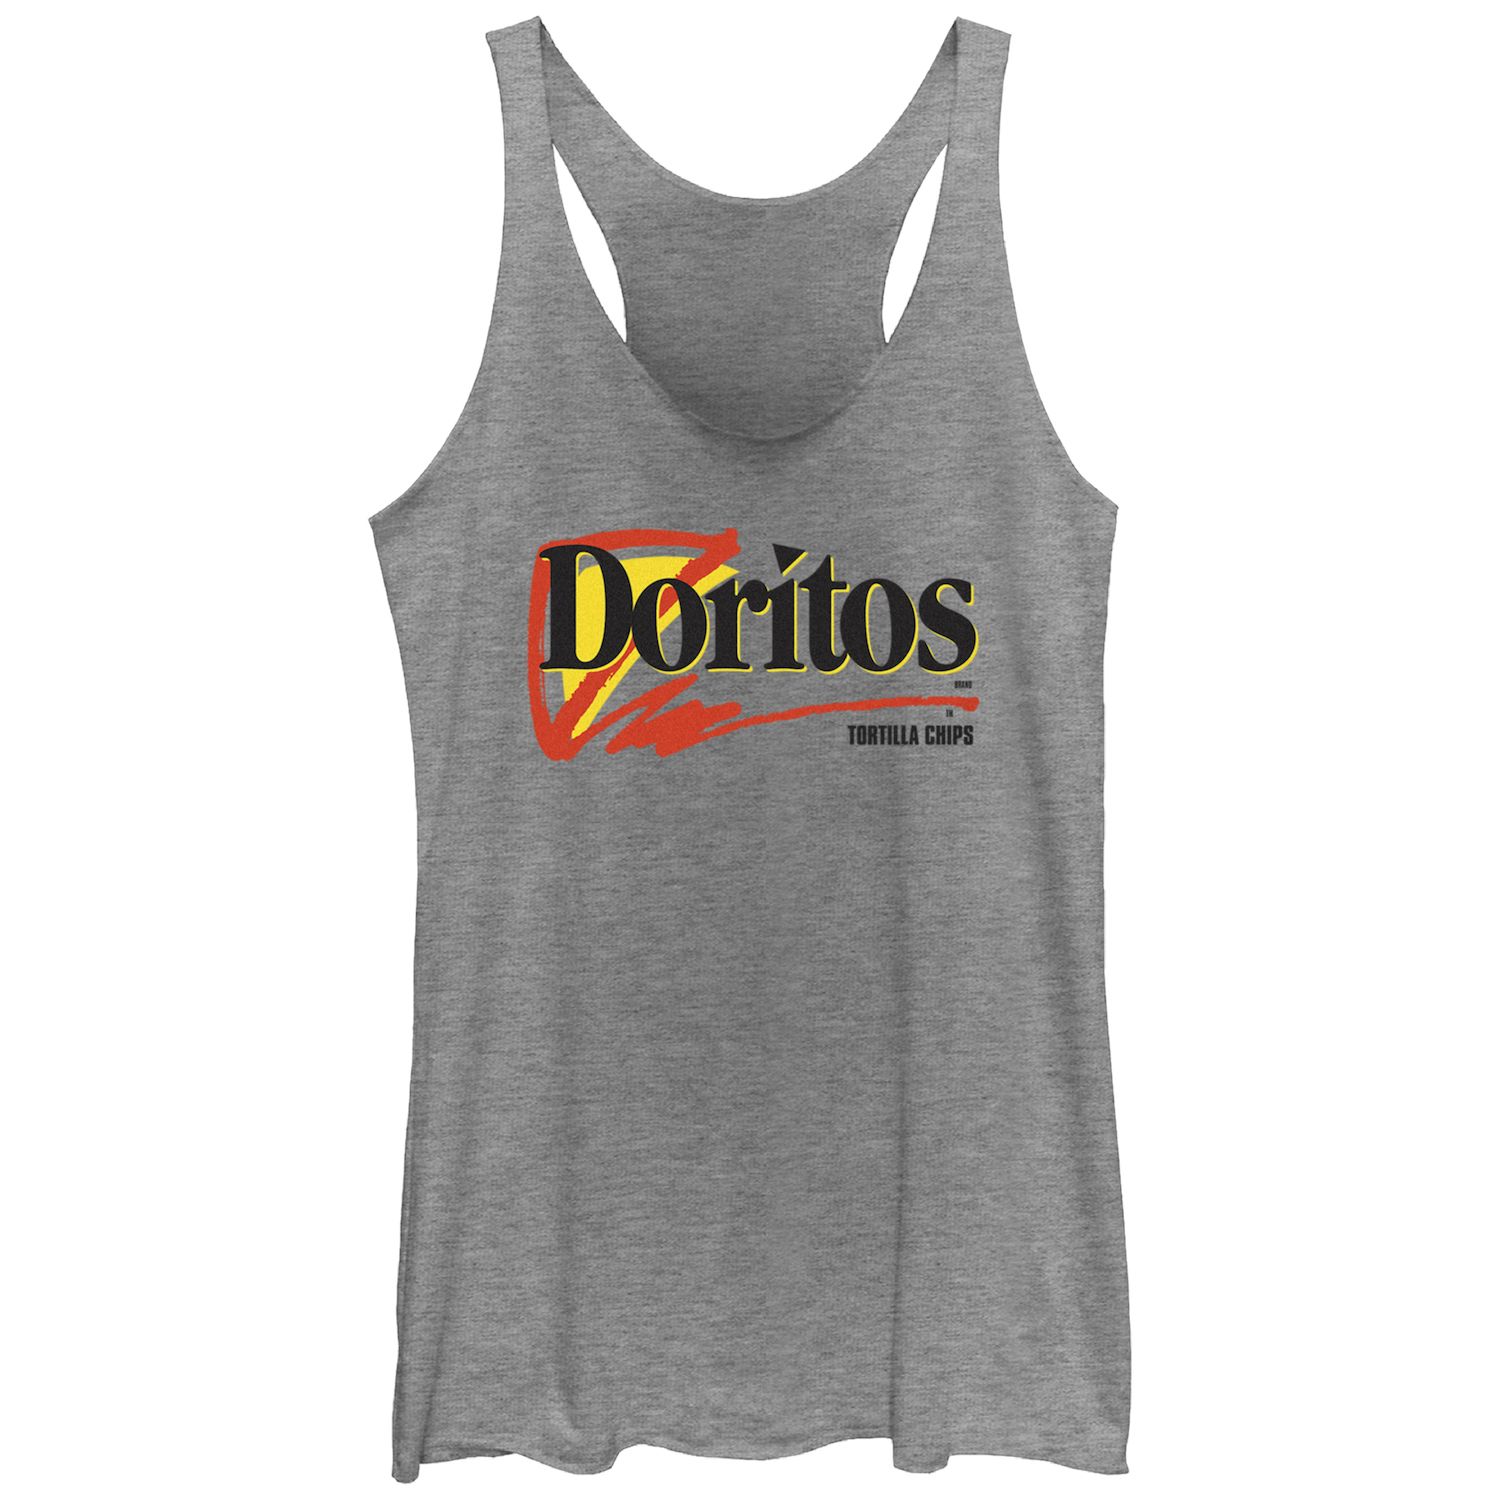 Майка-борцовка с логотипом Doritos Tortilla Chips для юниоров Doritos doritos dinamita flamin hot 40 gm